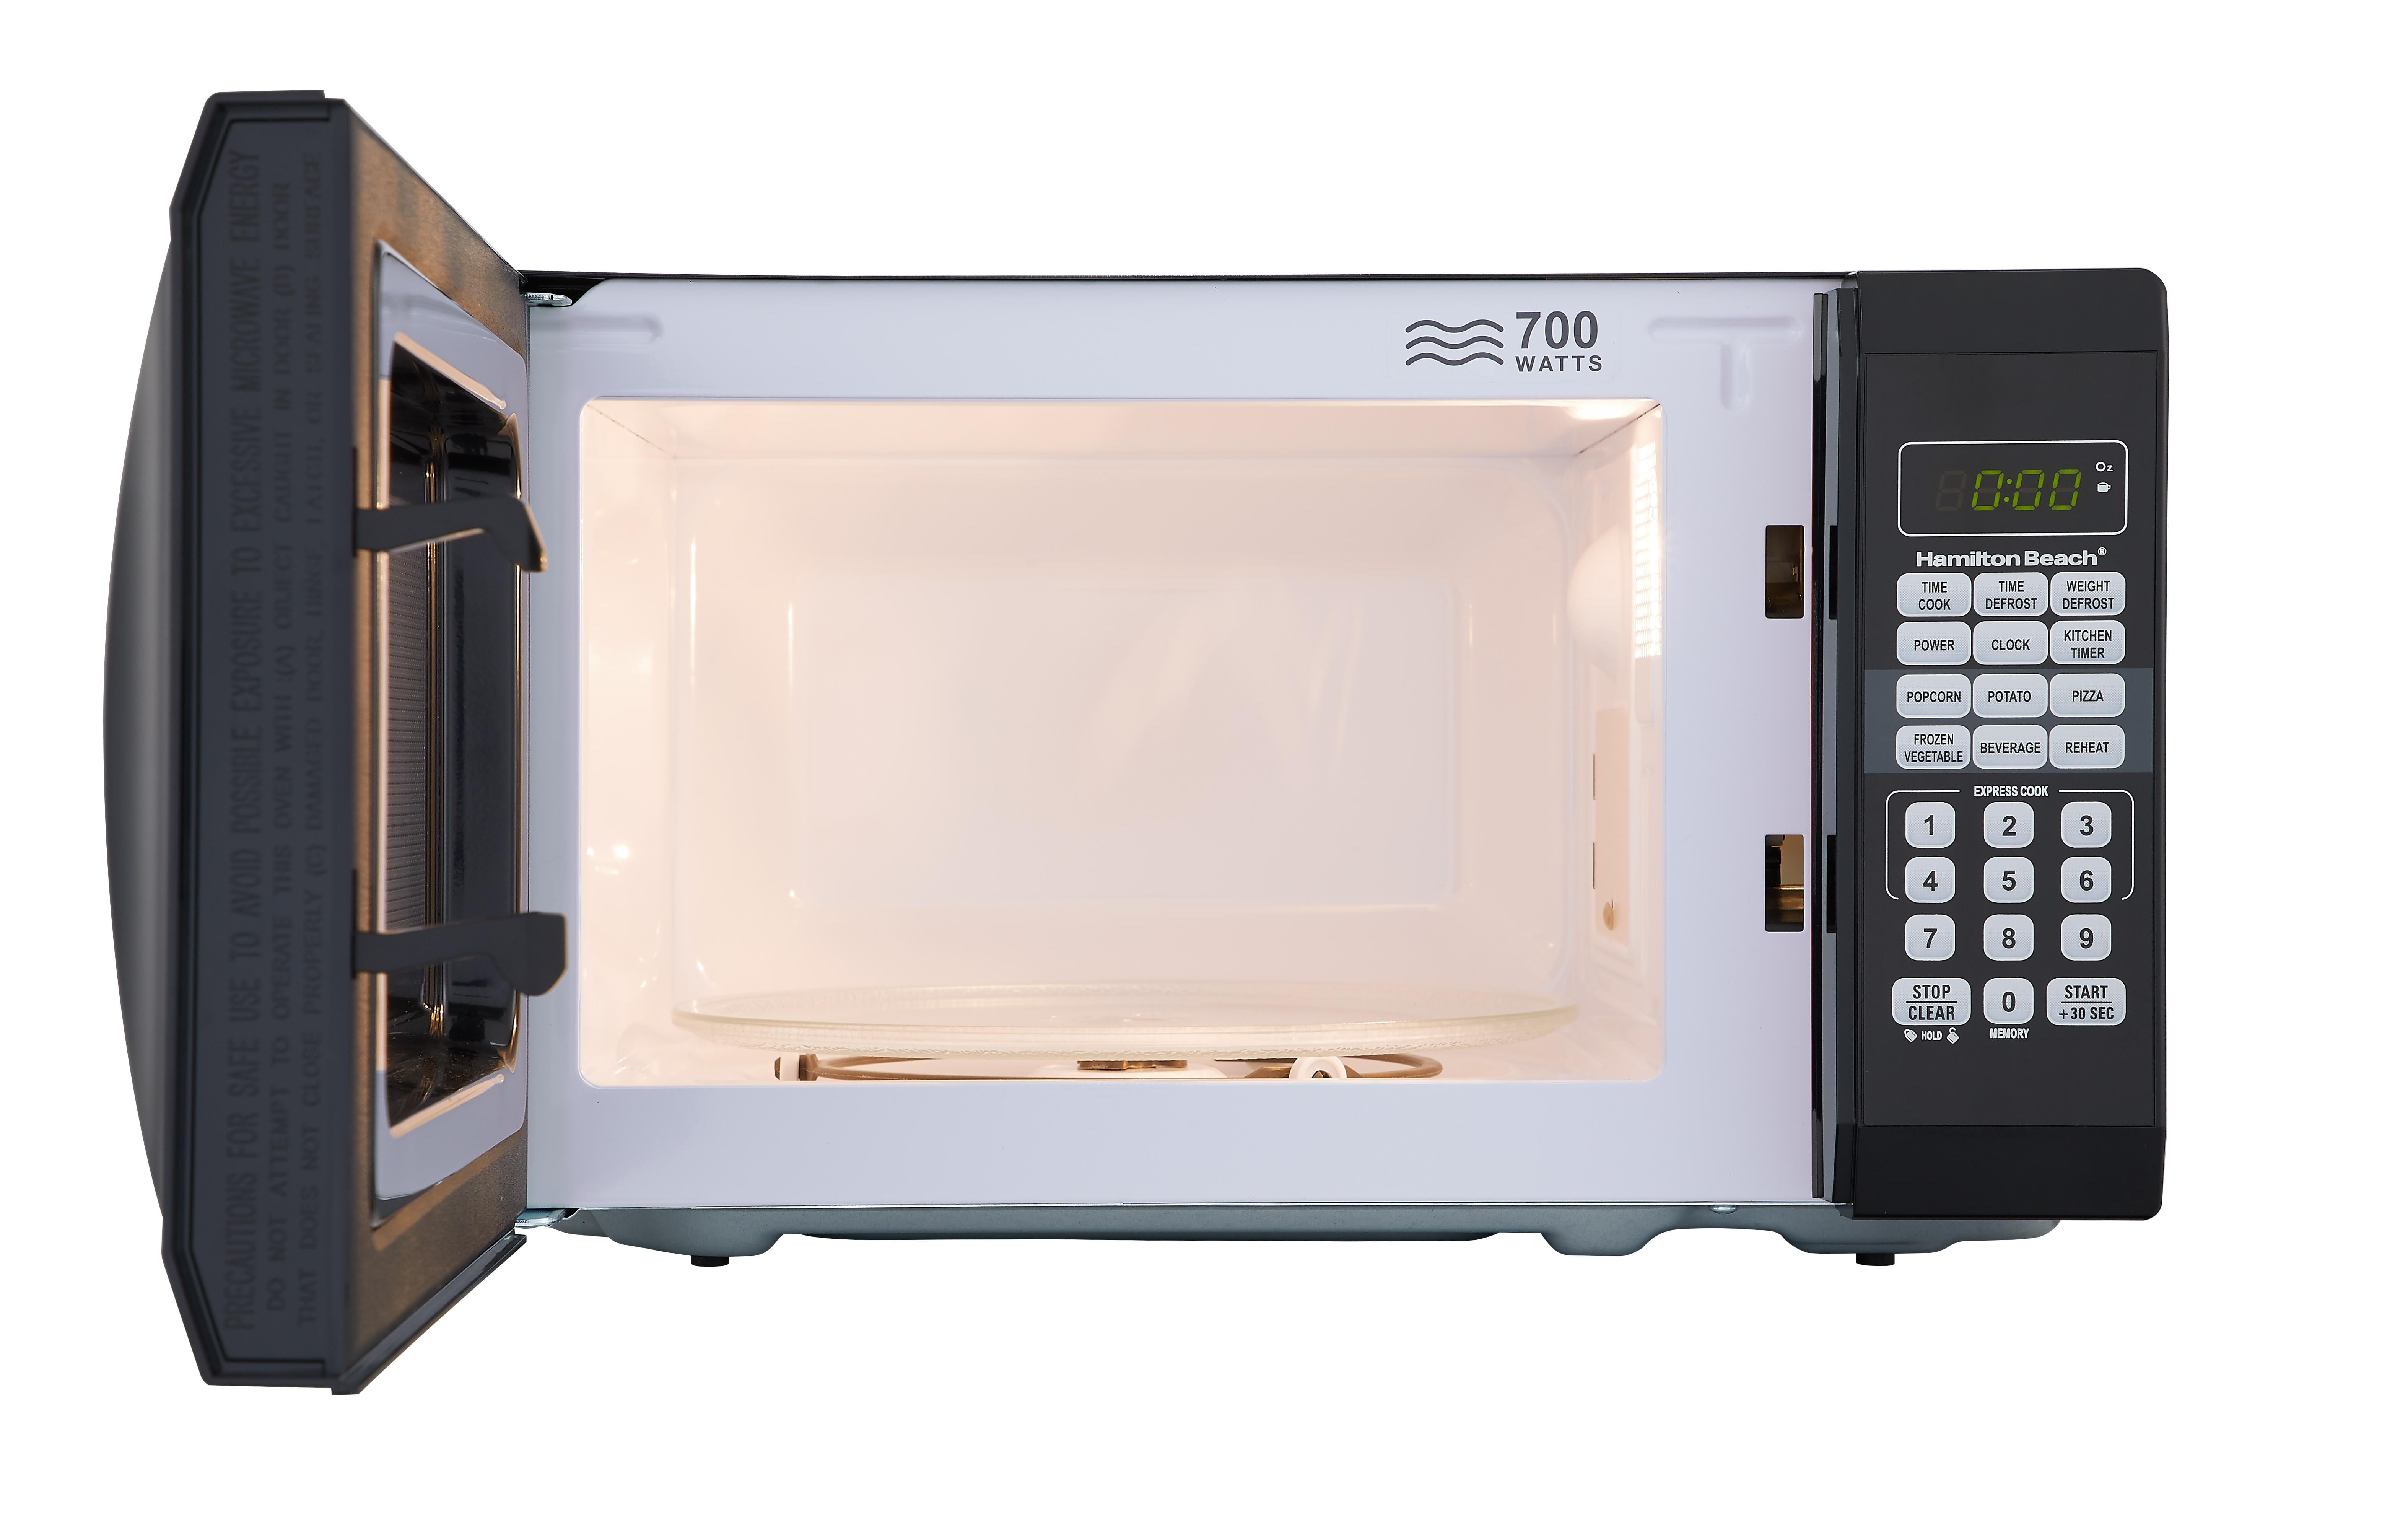 Midea Compact Black Microwave - 0.7-cu ft - 700 W